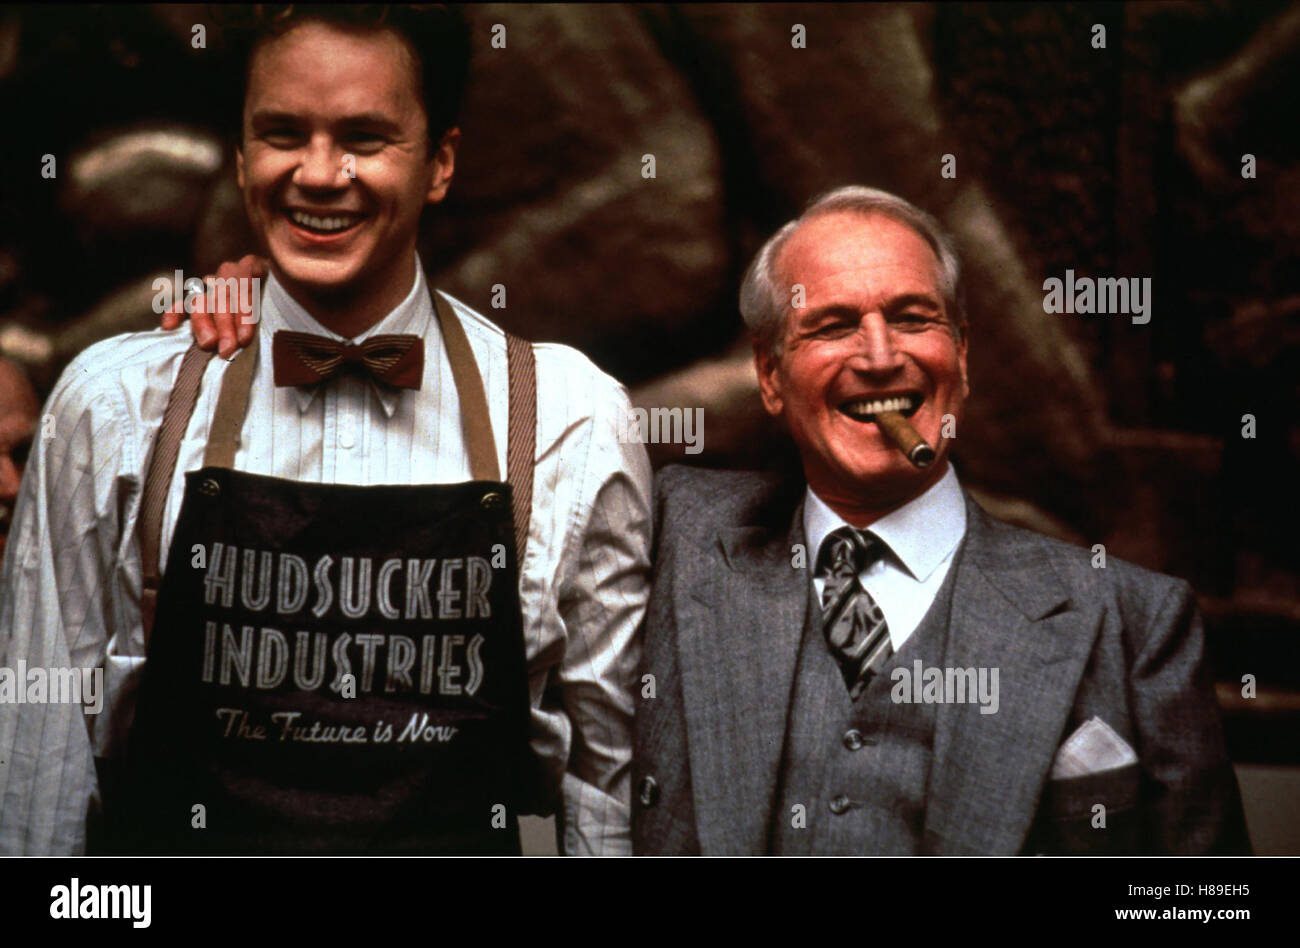 Hudsucker - Der große Sprung, (THE HUDSUCKER PROXY), USA 1993, Regie: Joel + Ethan Coen, TIM ROBBINS + PAUL NEWMAN, Stichwort: Schürze, Zigarre Stock Photo